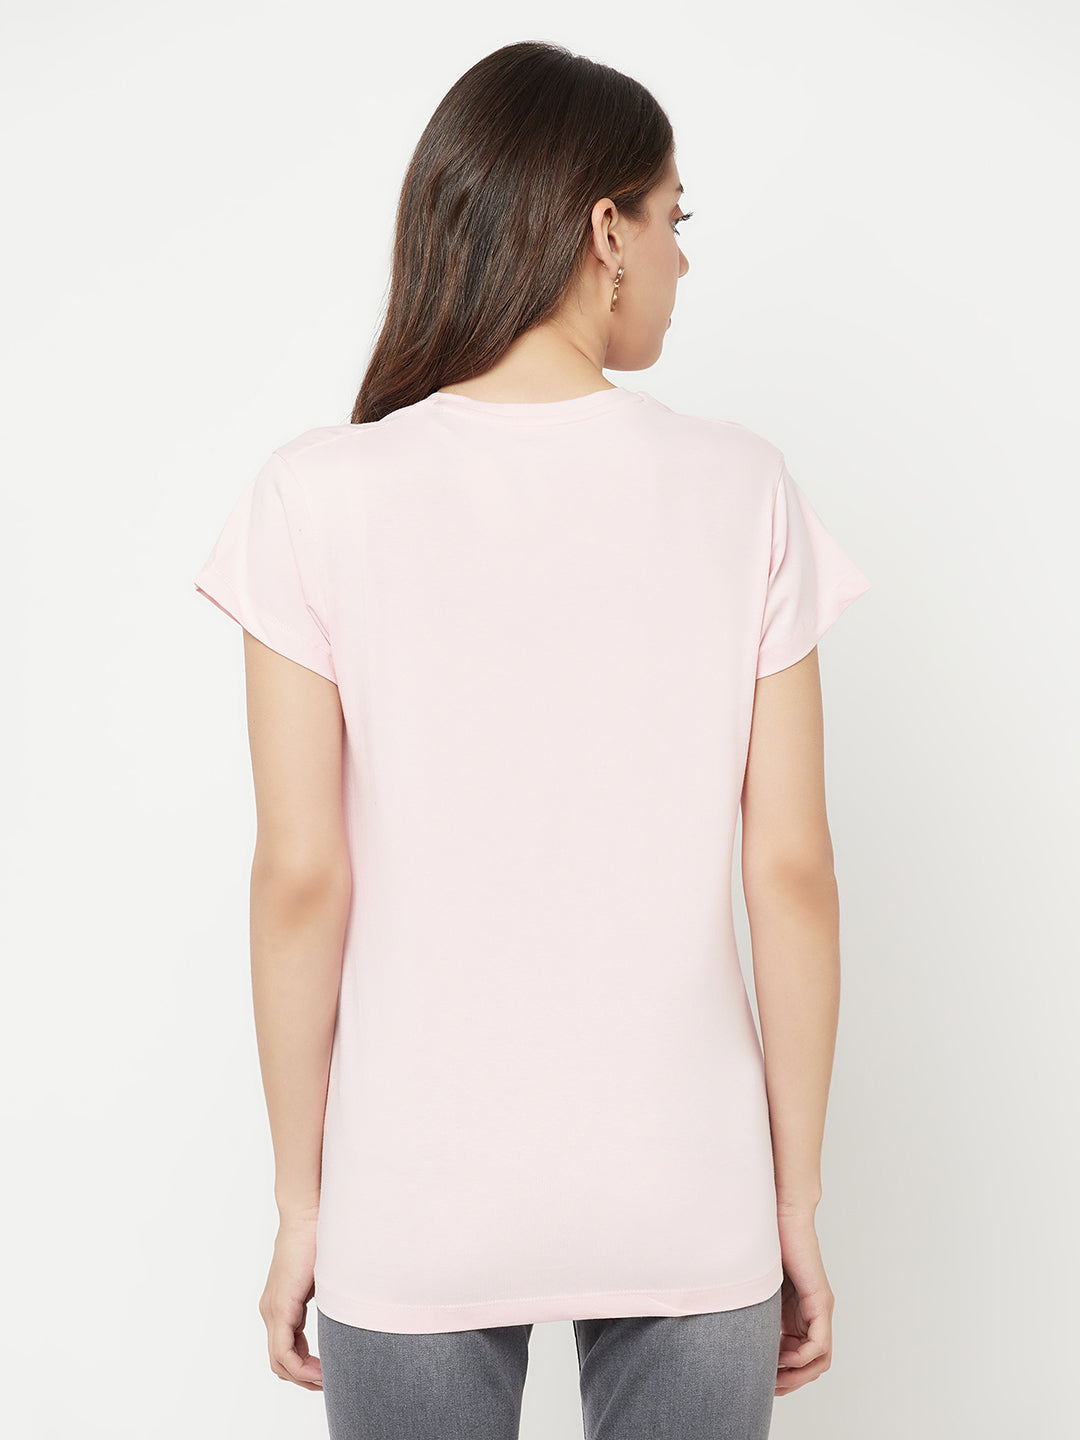 Light Pink Printed V-Neck T-Shirt - Women T-Shirts